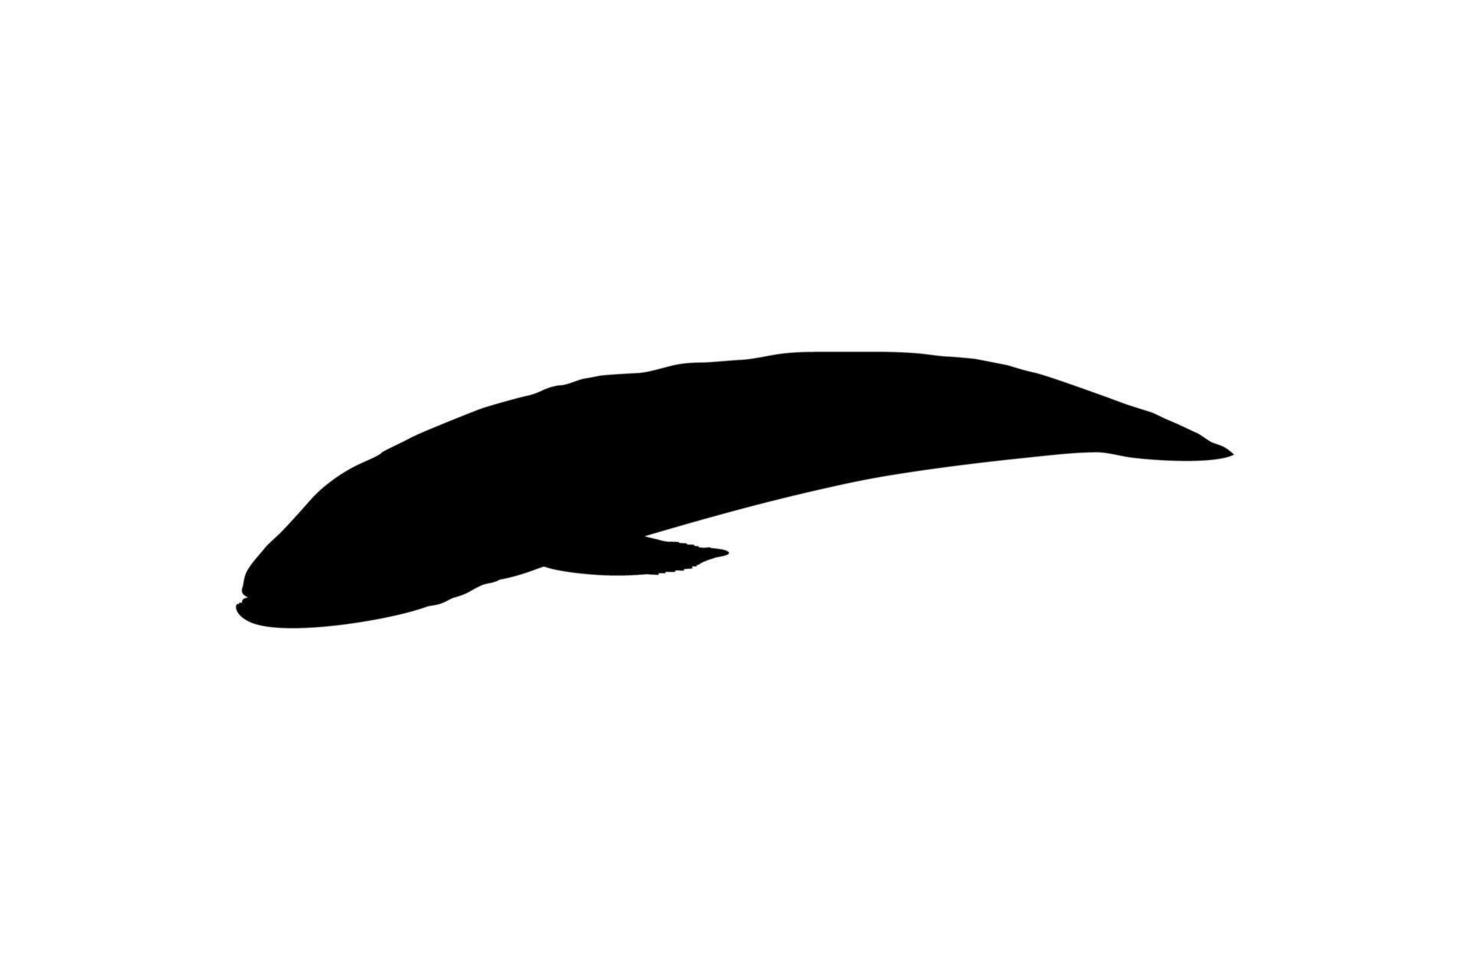 peixe cabeça de cobra, silhueta de channidae da família de peixes perciformes de água doce para logotipo, pictograma ou elemento de design gráfico. ilustração vetorial vetor